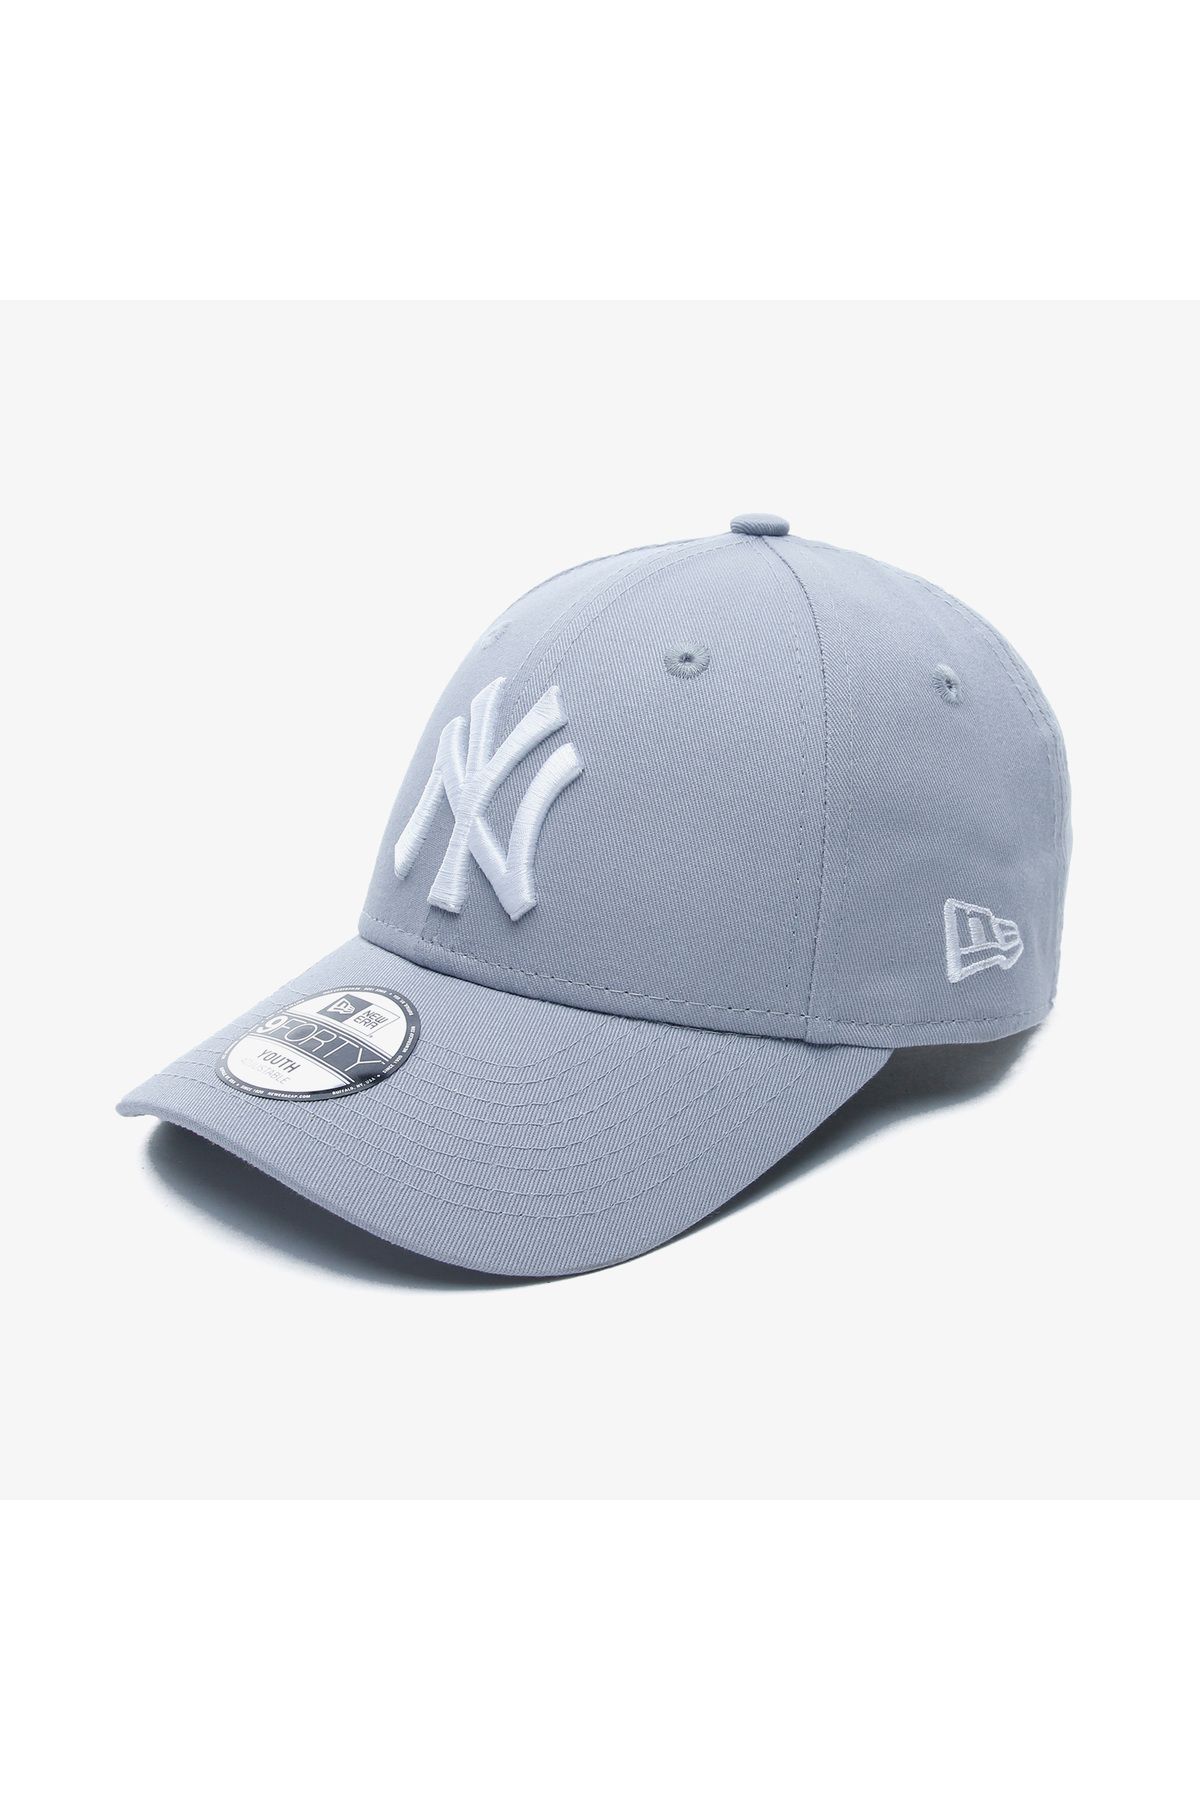 NEW ERA Mlb League New York Yankees Çocuk Beyaz Şapka